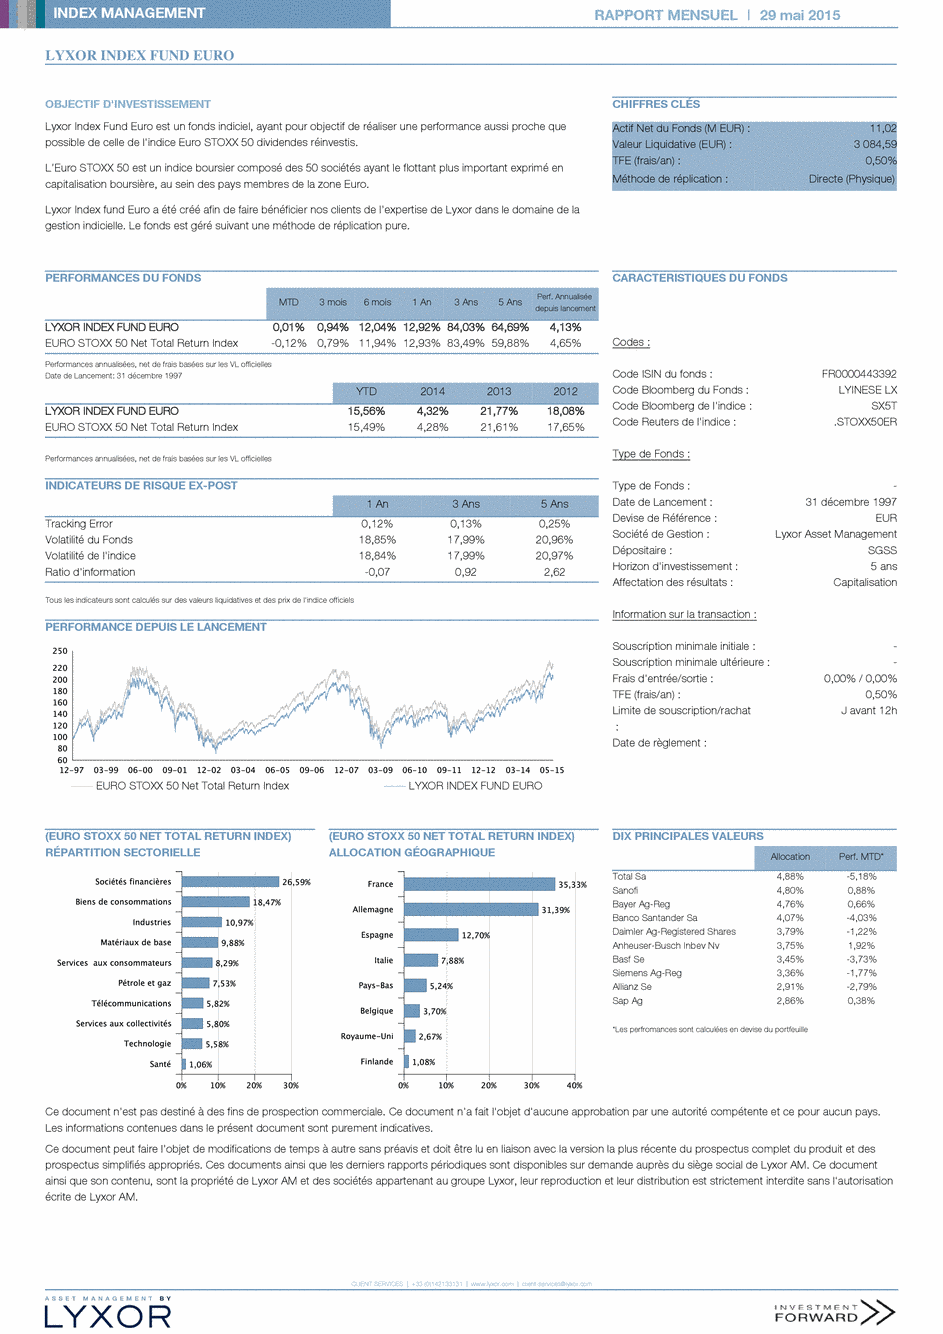 Reporting LYXOR INDEX FUND EURO - 31/05/2015 - Français